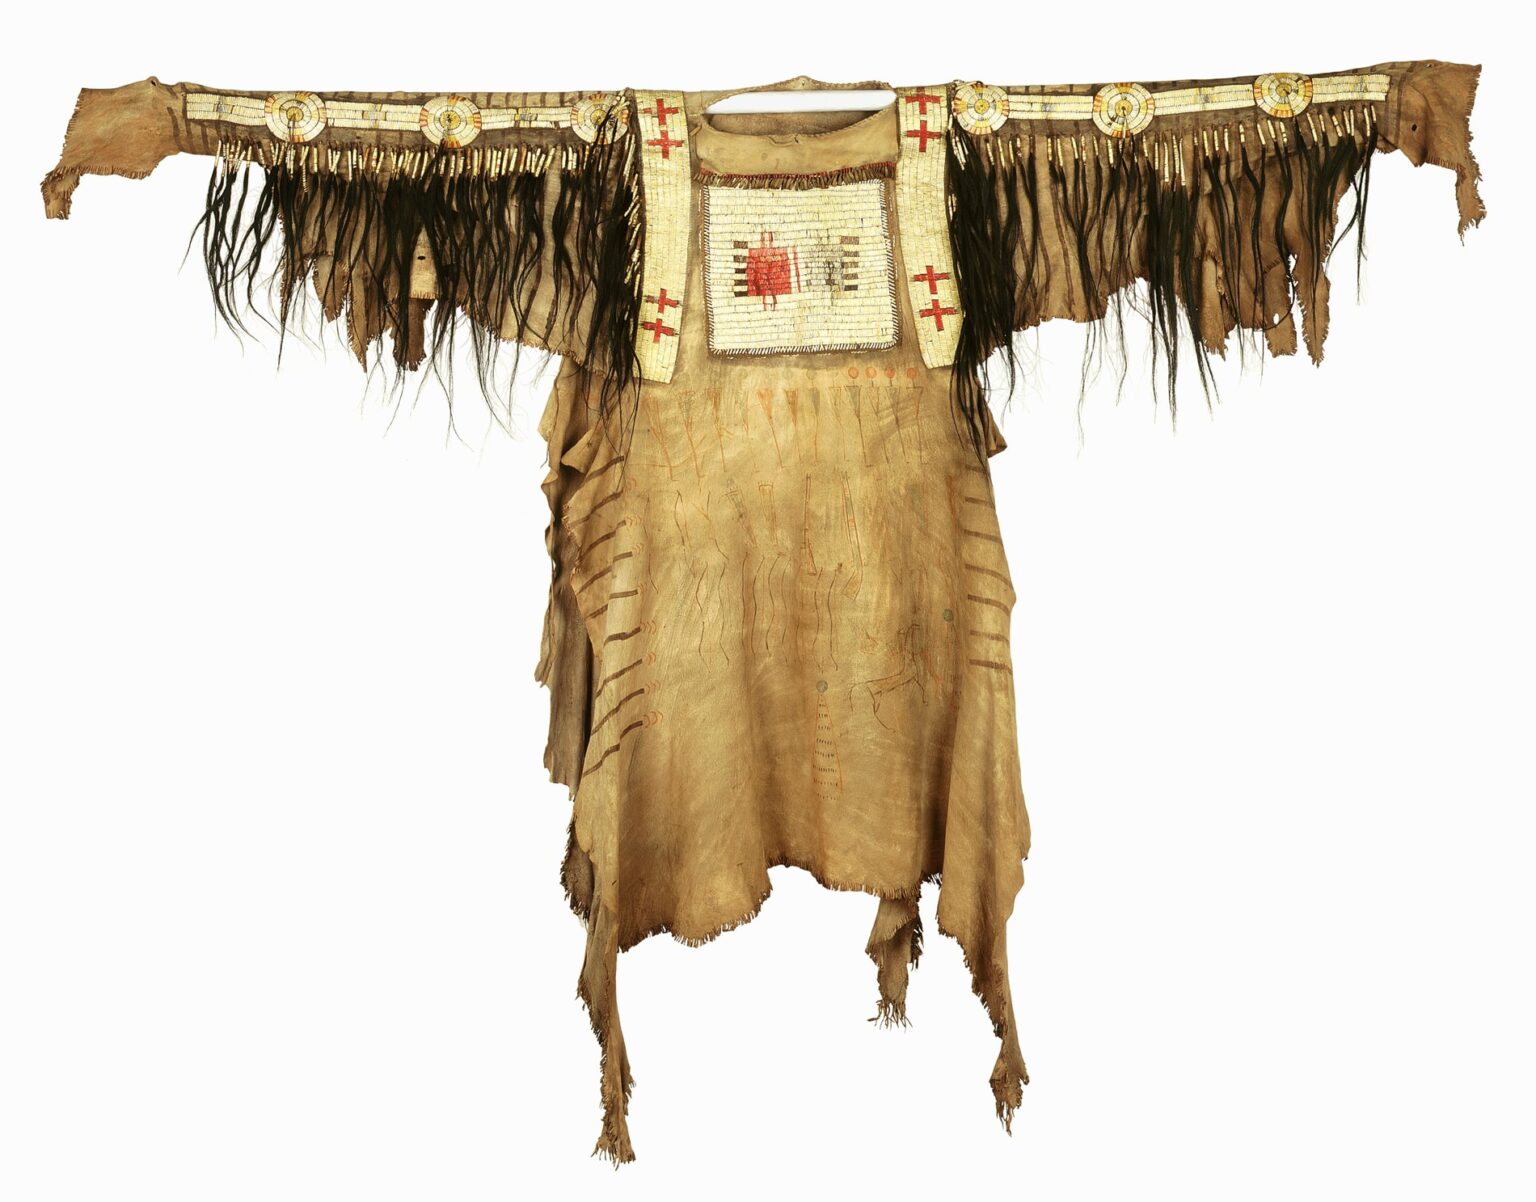 Černonožská košile (před r.1850) vyšívaná ursoními ostny. Pitt Rivers Museum.